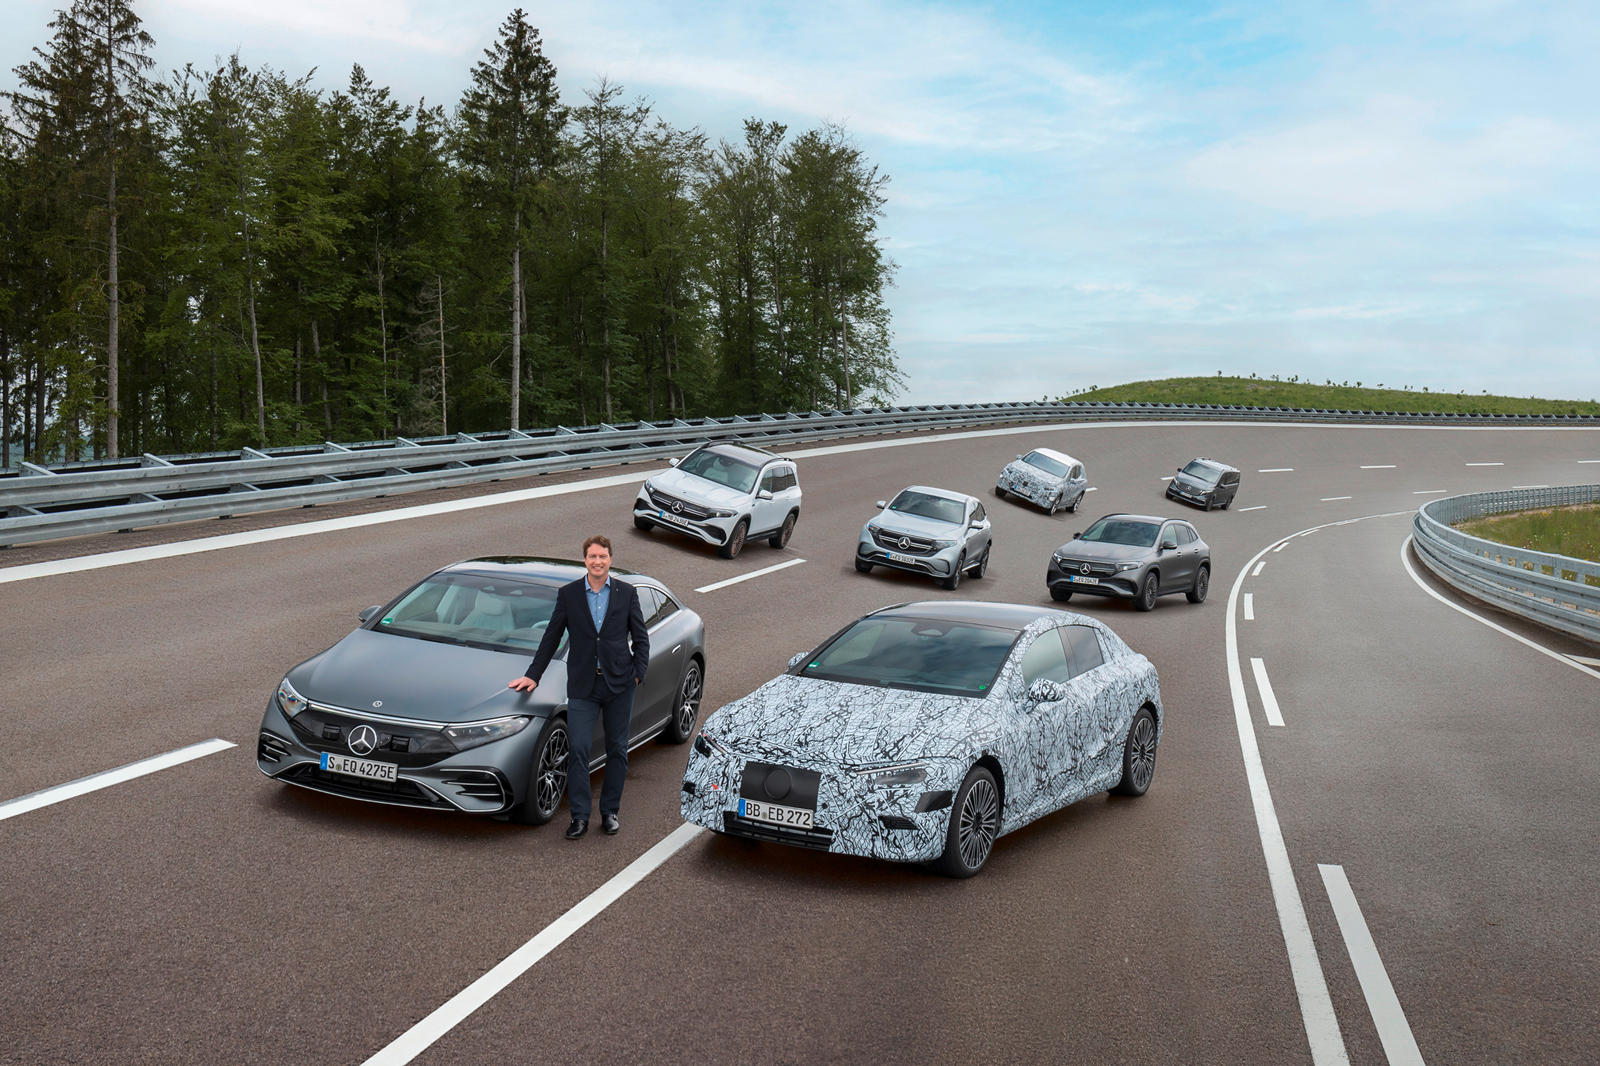 Сегодня Mercedes-Benz сделал огромную новость, объявив, что к 2030 году он будет полностью электрическим. В рамках этого плана каждый новый автомобиль, выпущенный после 2025 года, будет только электрическим и будет опираться на одну из трех новых эле